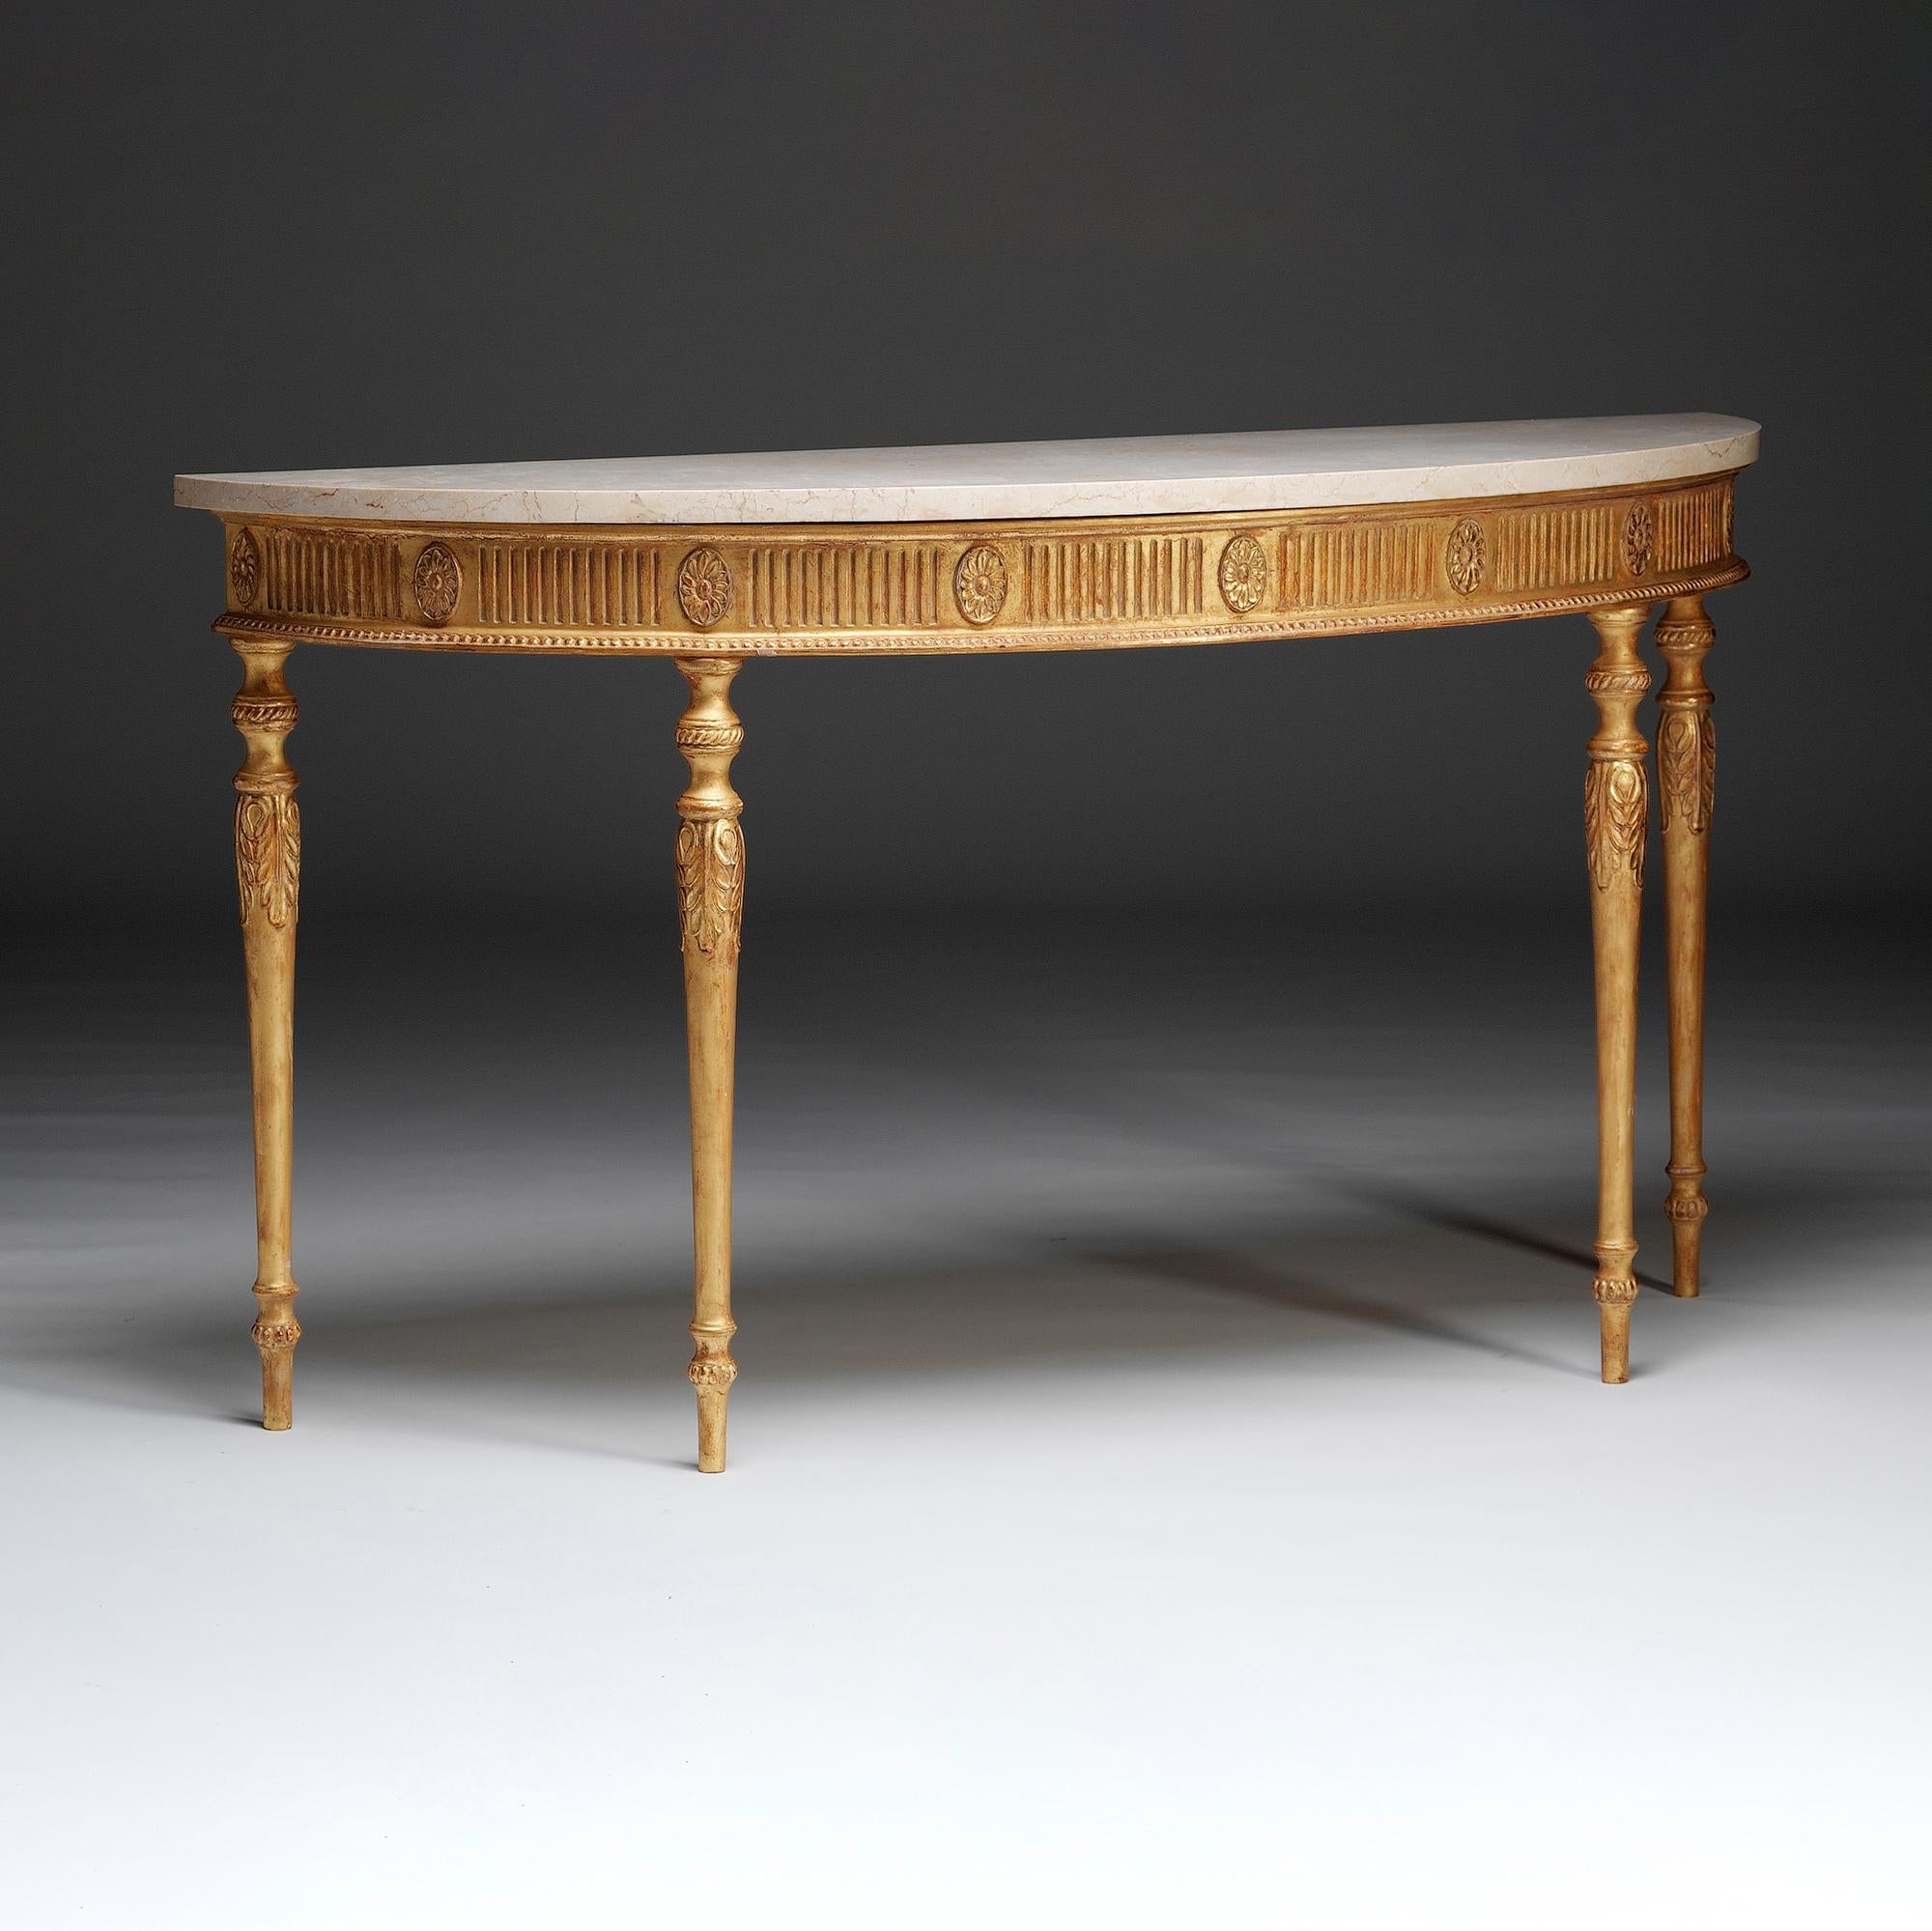 Cette table d'appoint semi elliptique à plateau en marbre doré, dans le style de George III et de l'influence de Robert Adam, présente une frise cannelée ponctuée de pateras à tête de fleur entre des moulures sculptées. Les pieds tournés et effilés